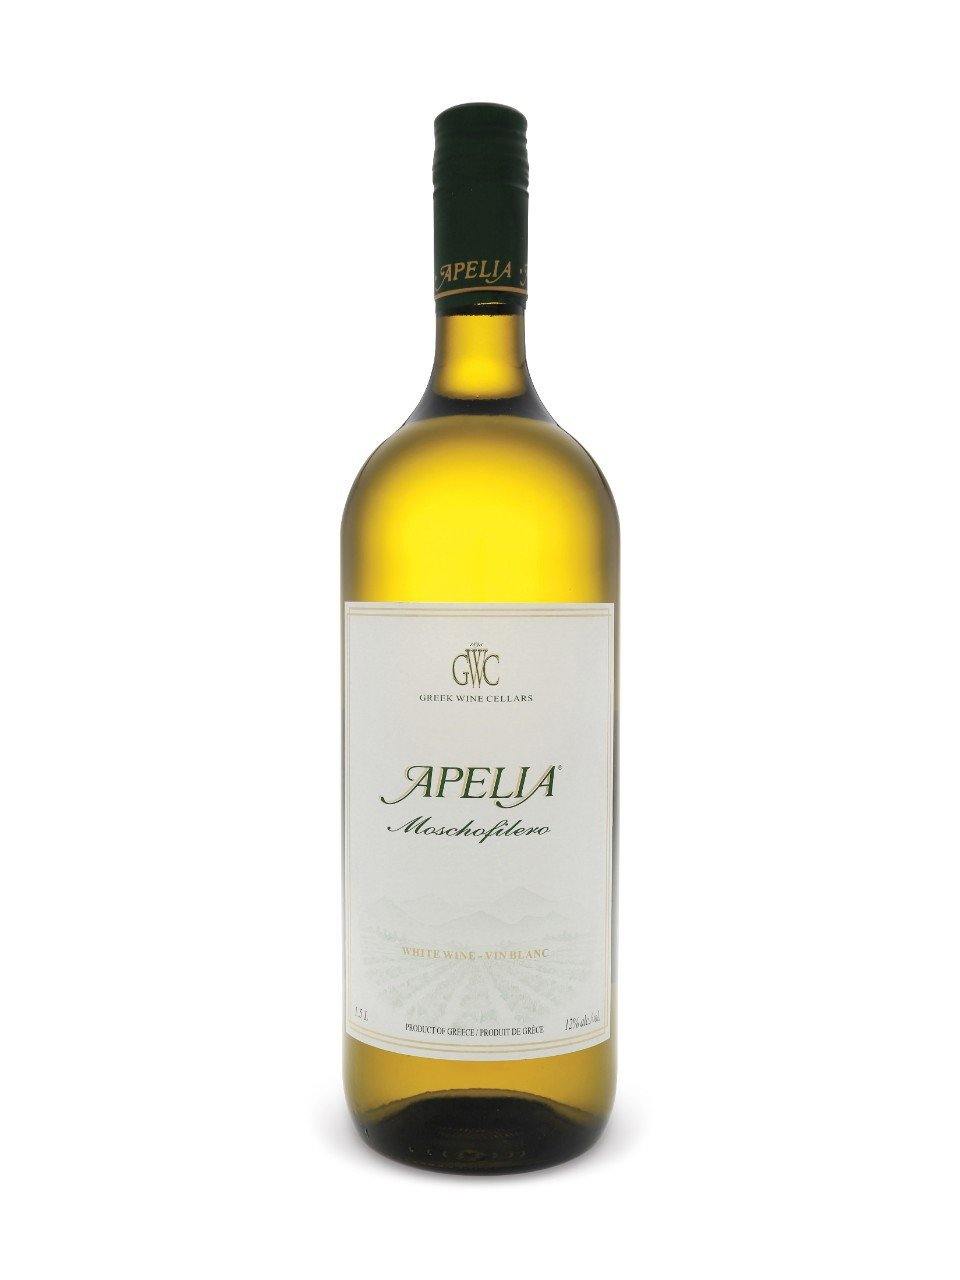 Kourtakis Apelia Moschofilero White Peloponnese IGP 1500 mL bottle - Speedy Booze